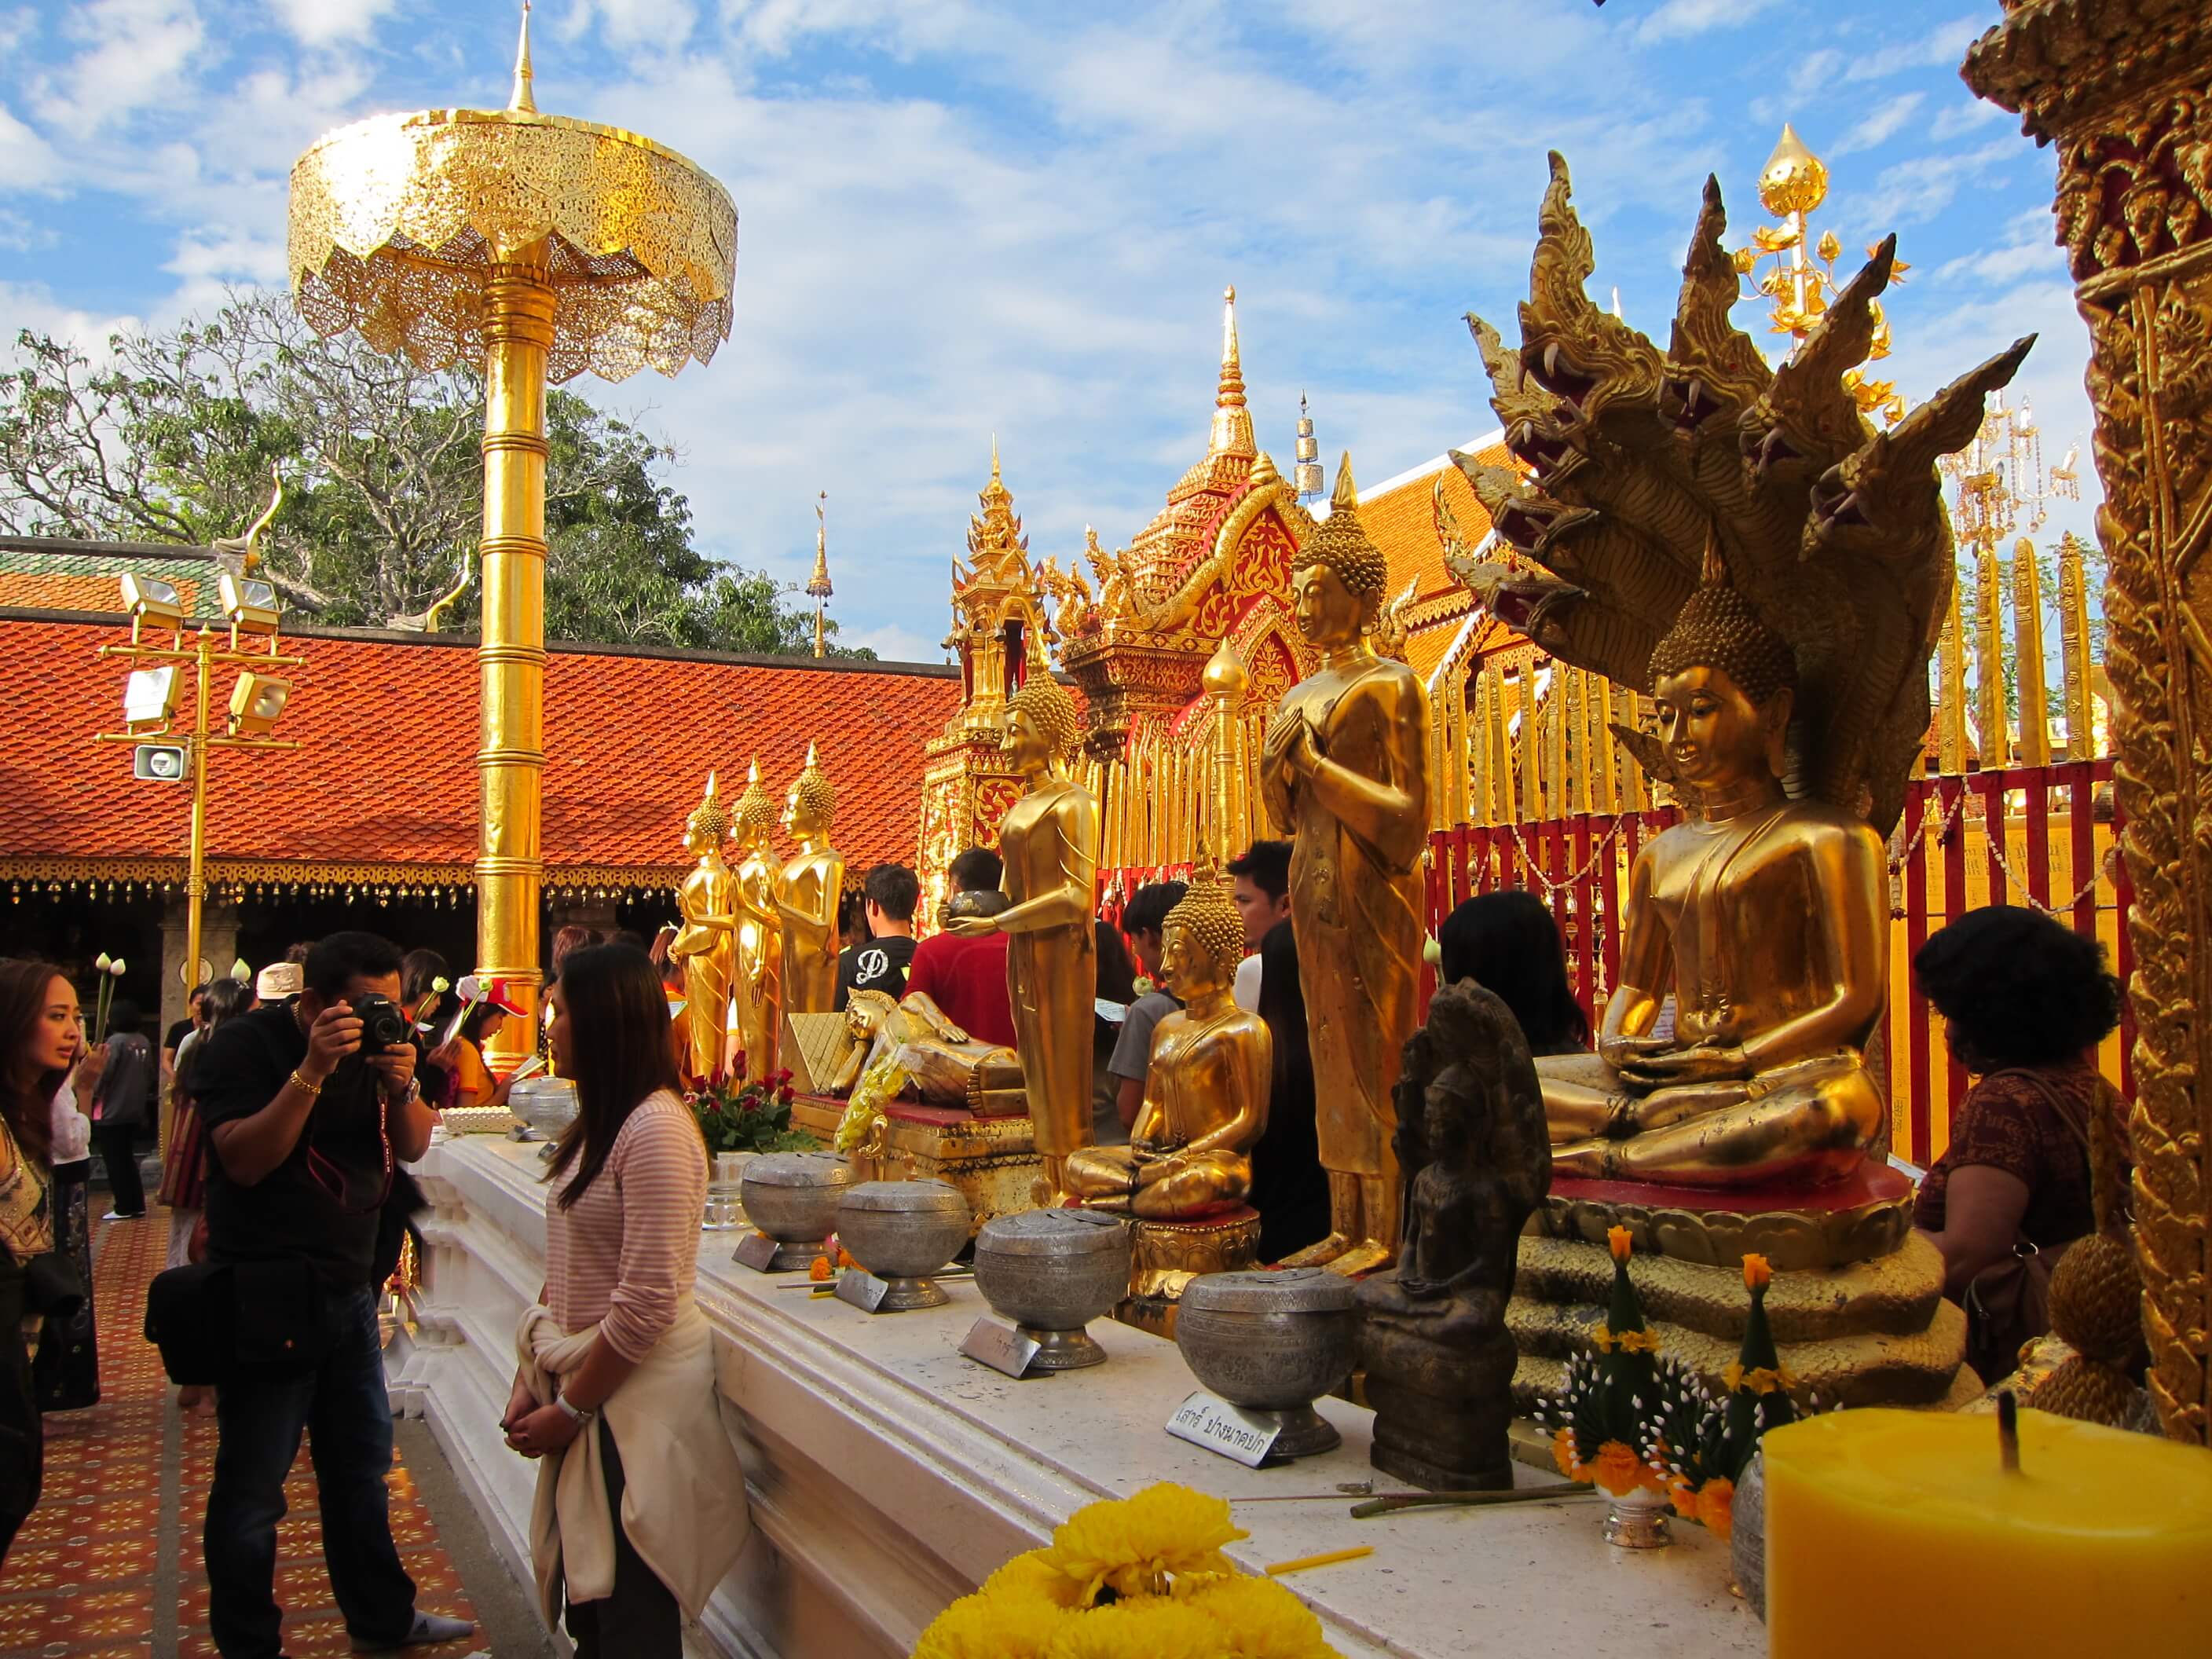 Wat Prathat Doi Suithep